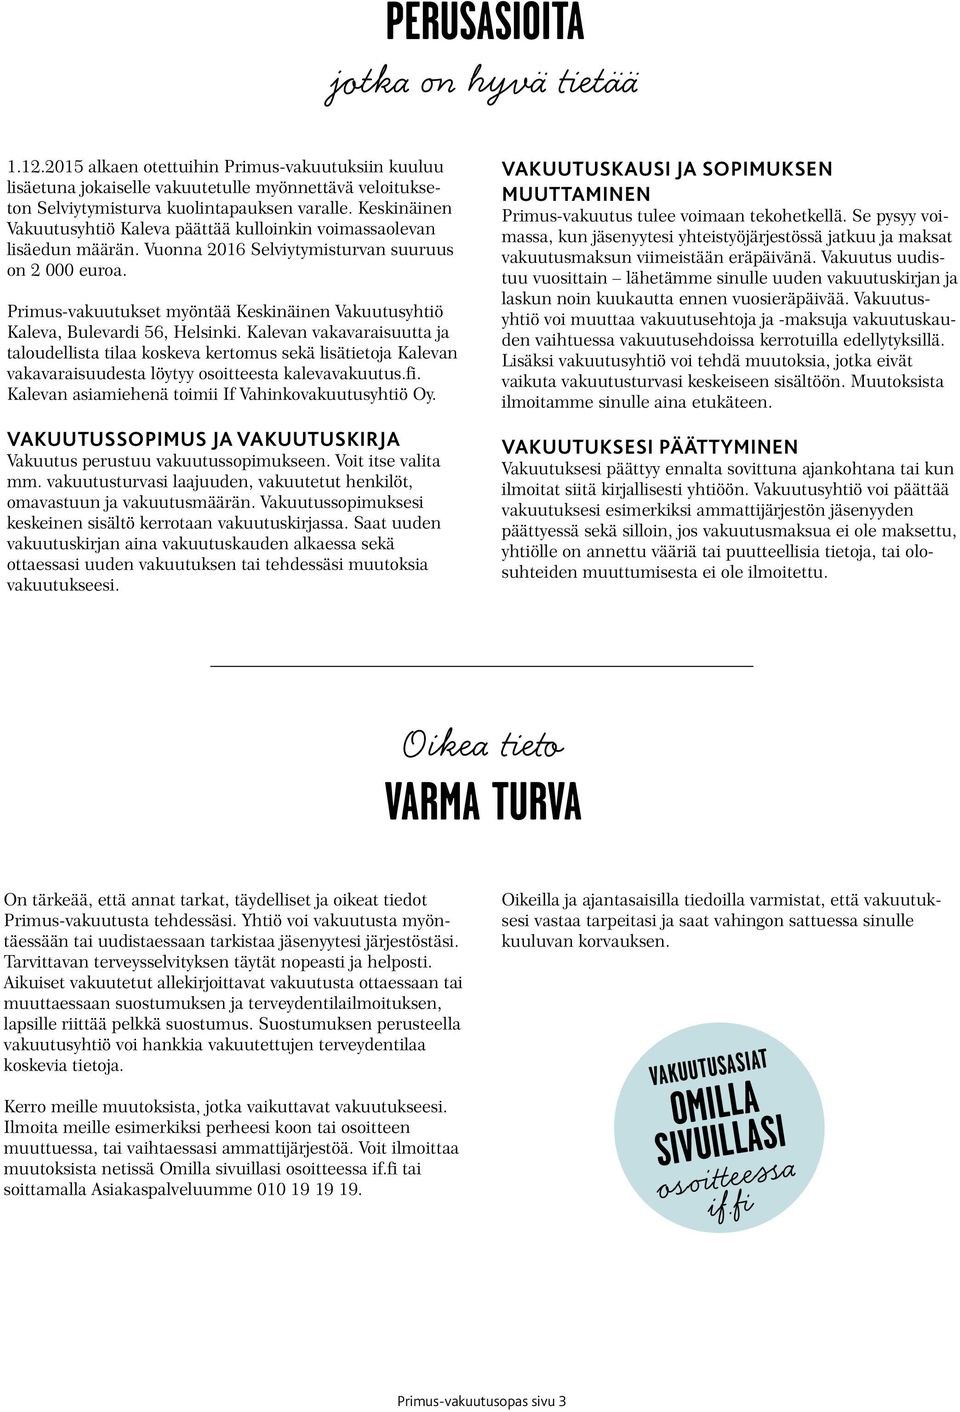 Primus-vakuutukset myöntää Keskinäinen Vakuutusyhtiö Kaleva, Bulevardi 56, Helsinki.